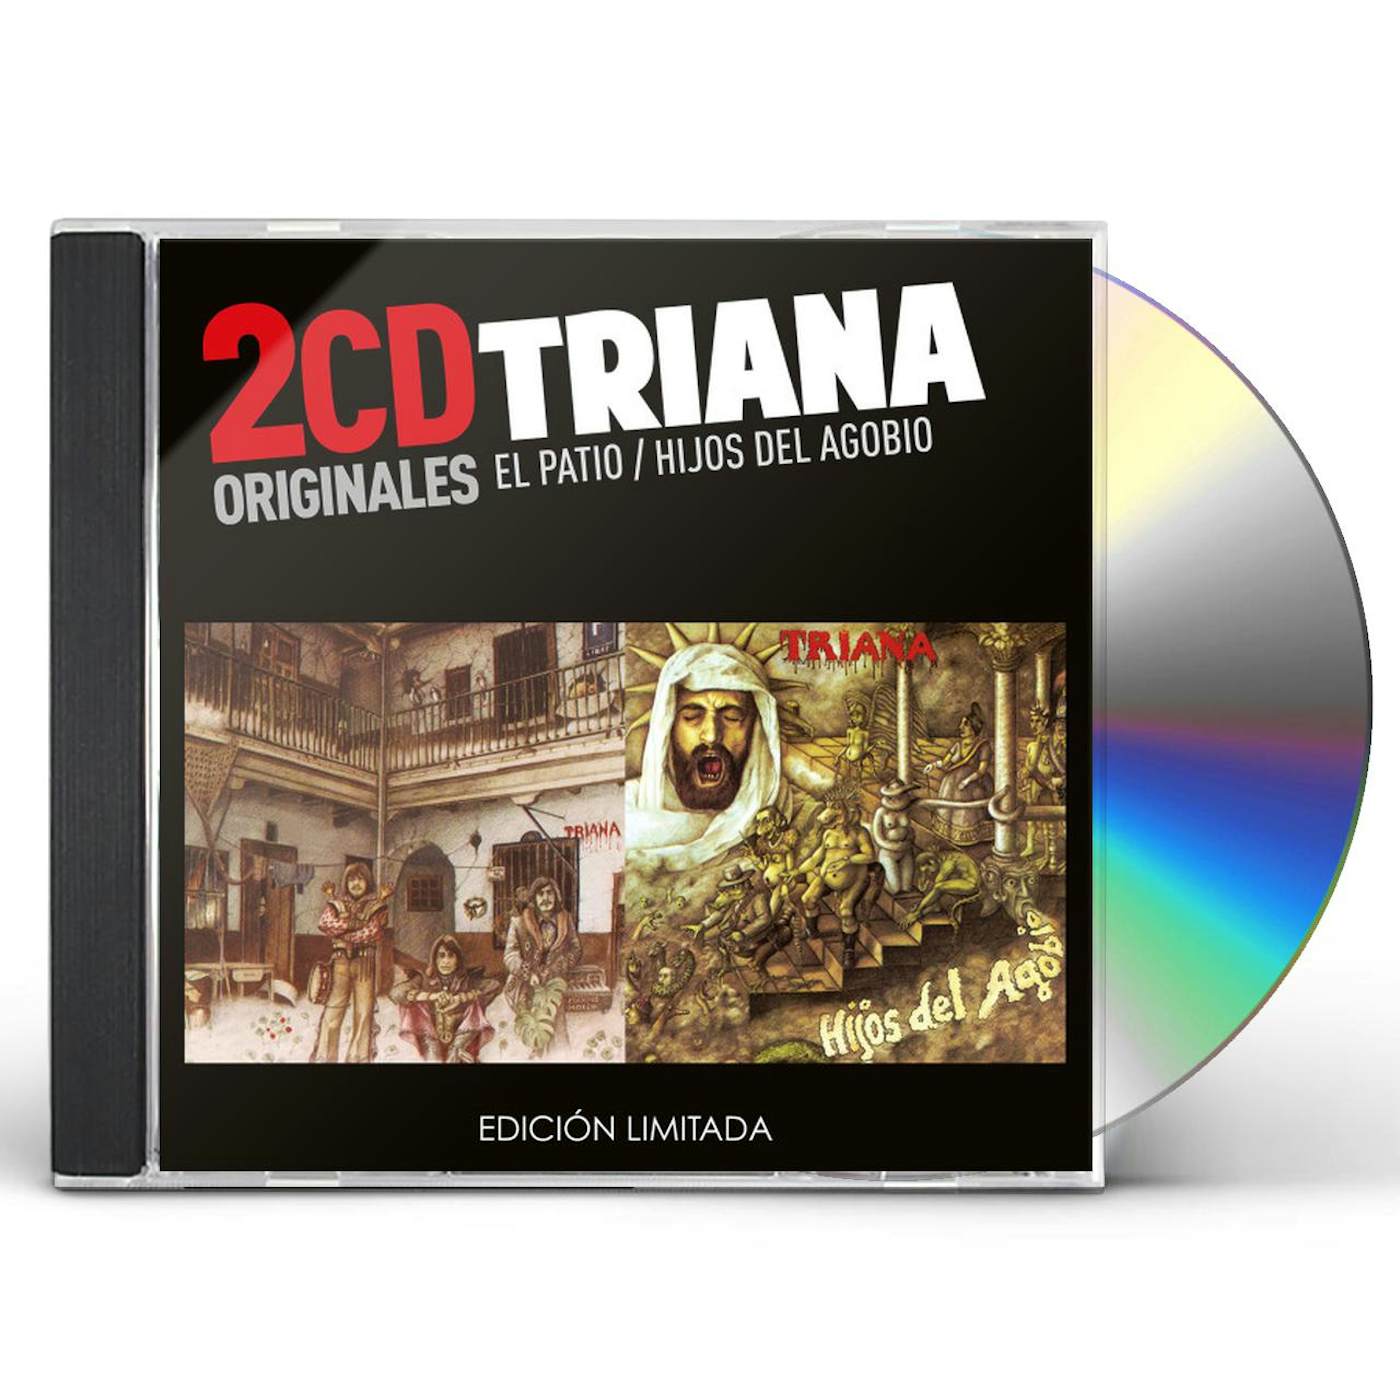 Triana EL PATIO / HIJOS DEL AGOBIO CD